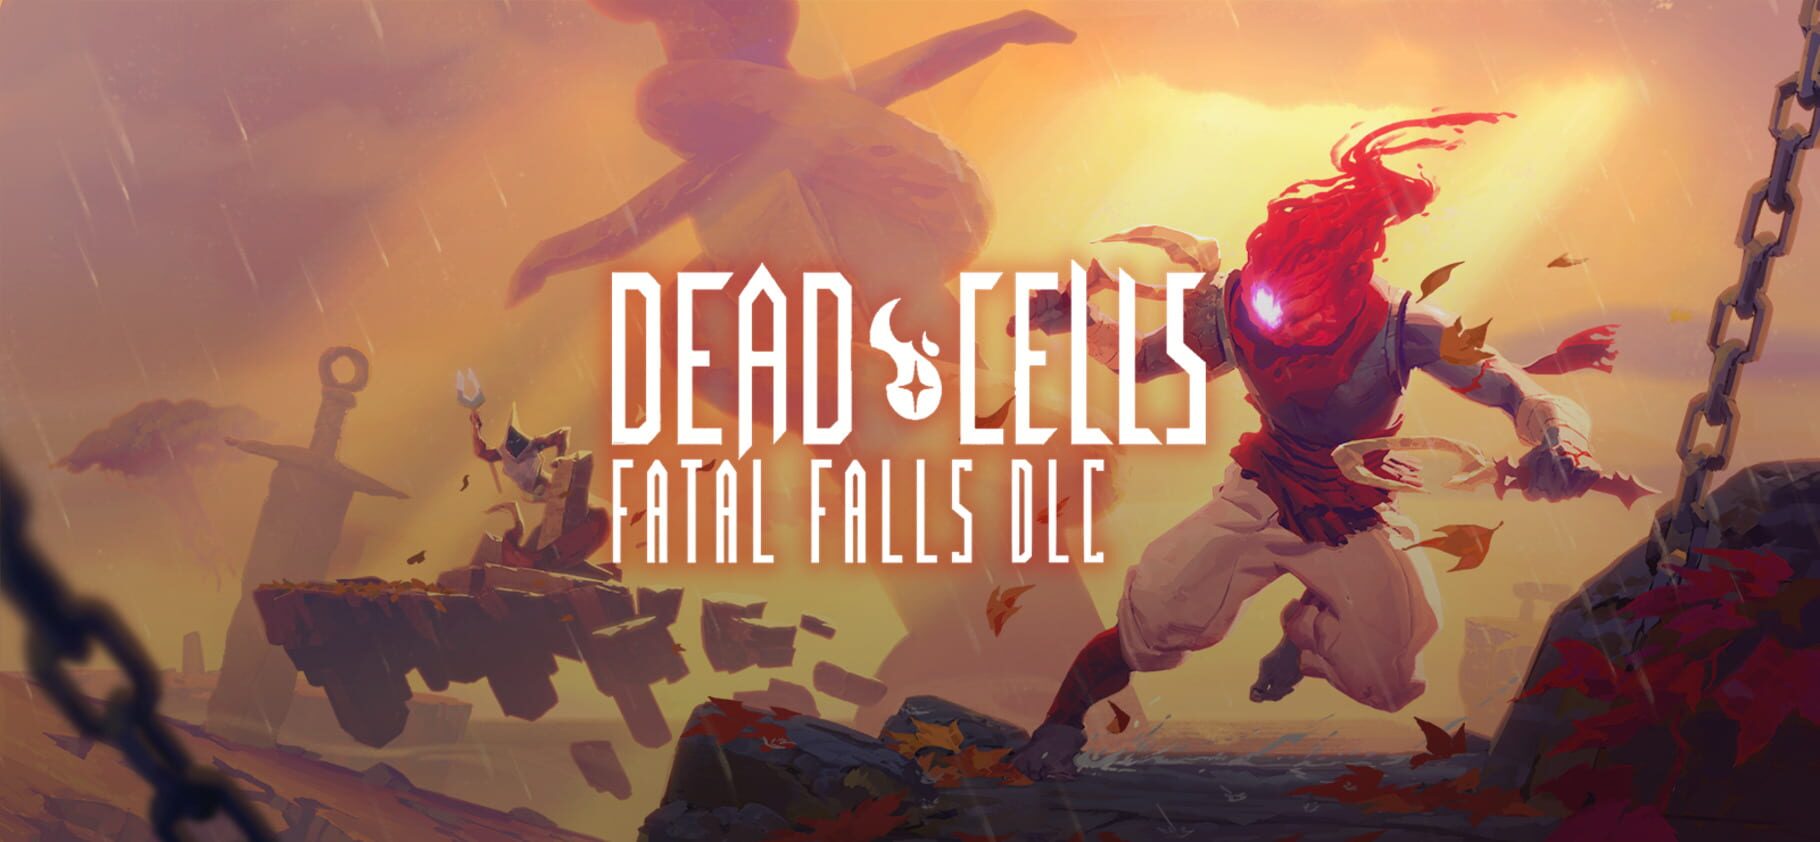 Dead Cells: Fatal Falls artwork